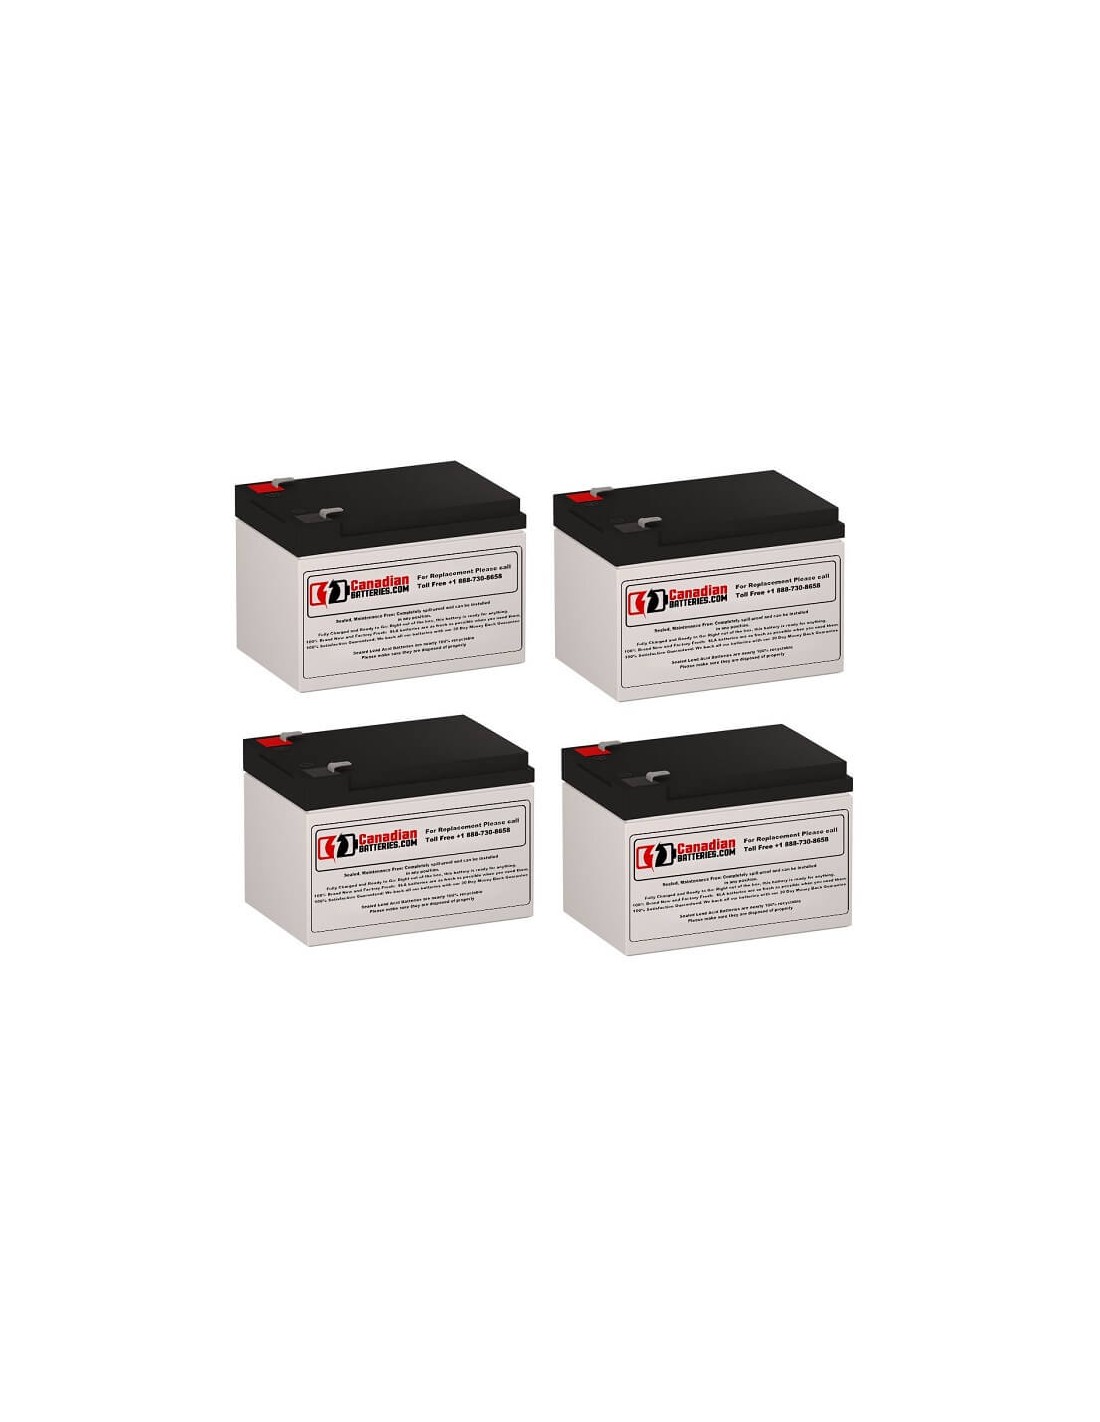 Batteries for Belkin F6c320 UPS, 4 x 12V, 12Ah - 144Wh